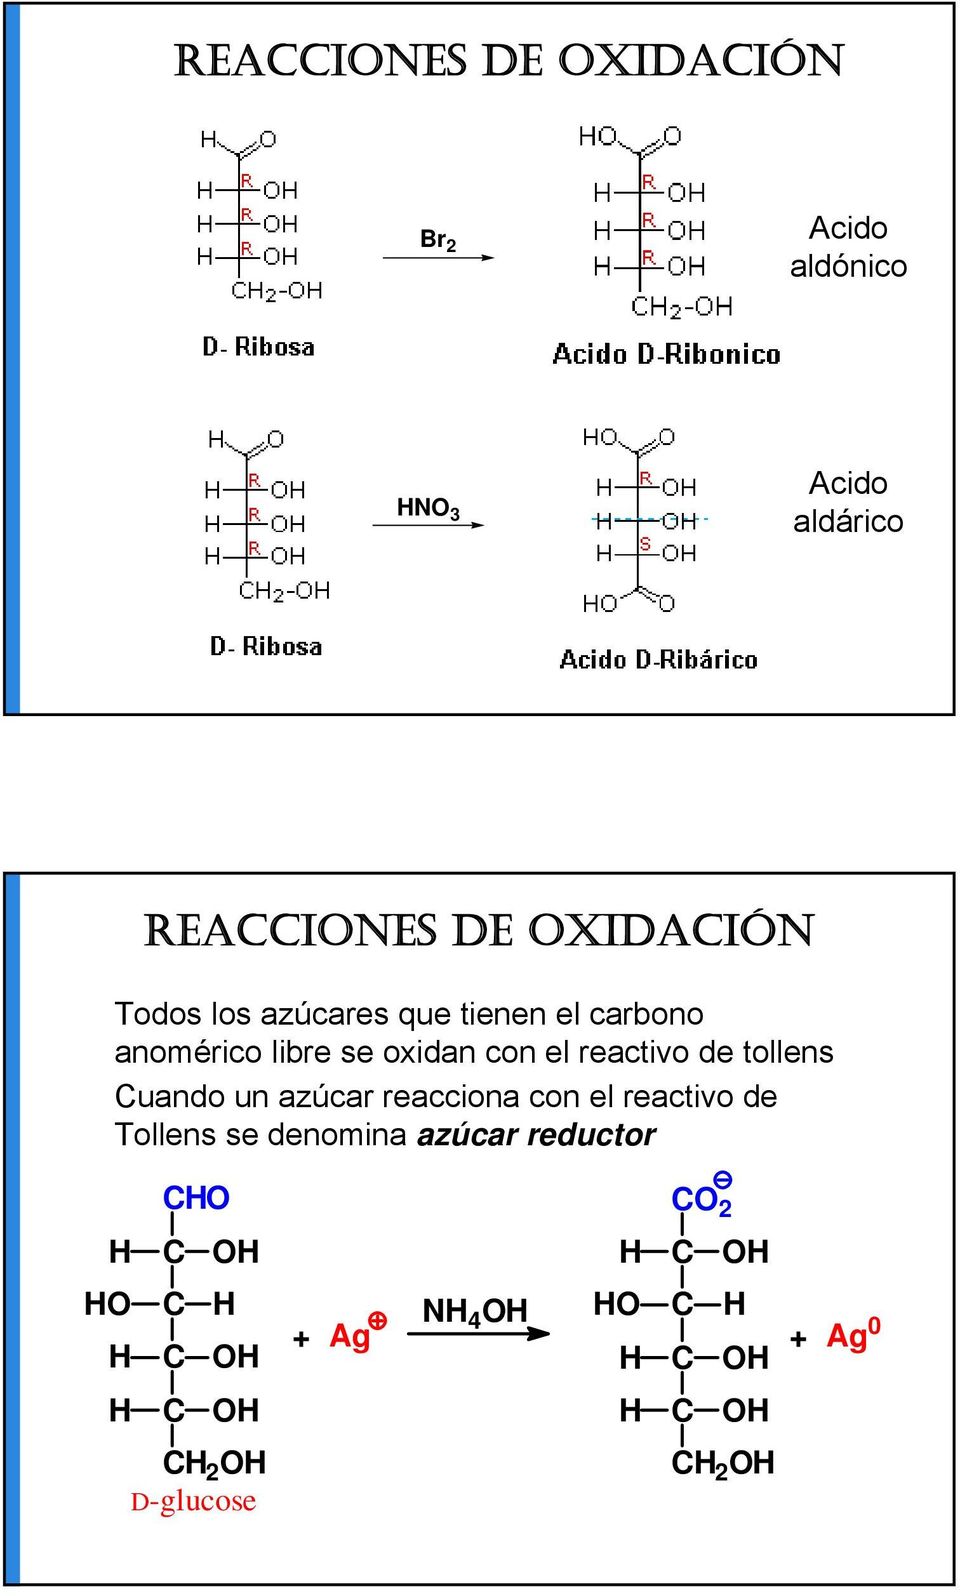 oxidan con el reactivo de tollens uando un azúcar reacciona con el